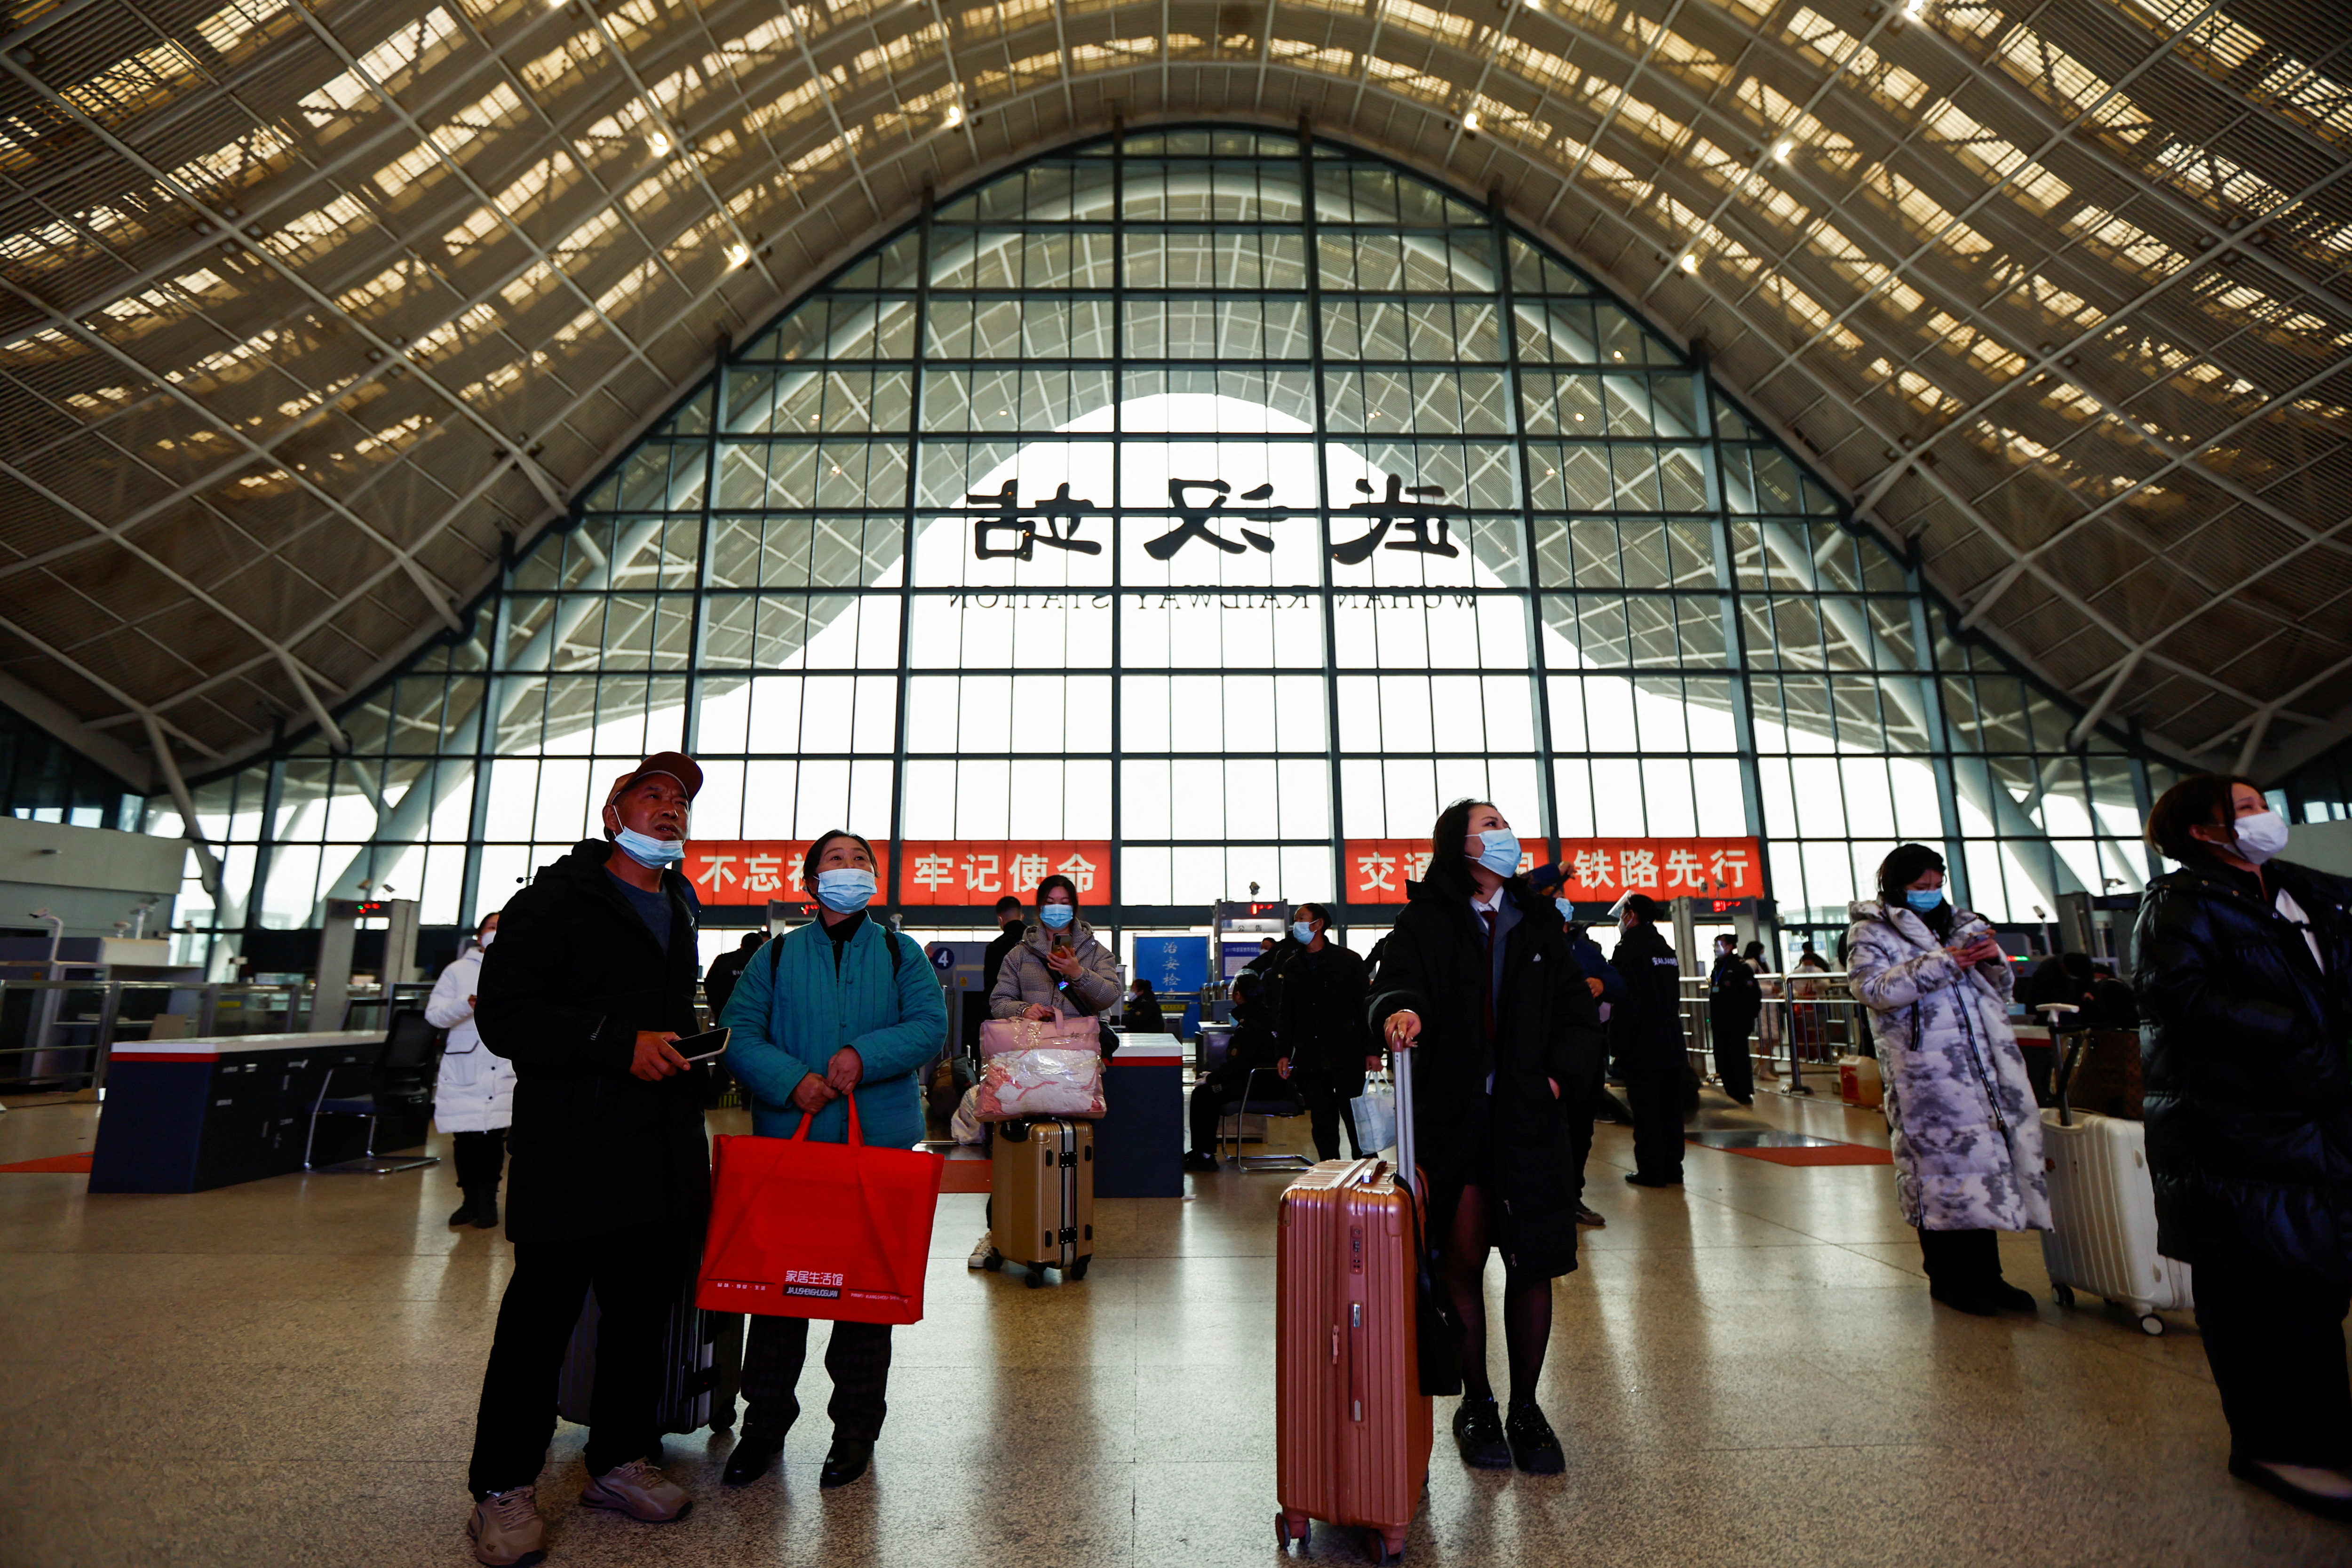 La gente espera con equipaje en una estación de tren, en medio del brote de la enfermedad coronavirus (COVID-19), en Wuhan, provincia de Hubei, China, 1 de enero de 2023. REUTERS/Tingshu Wang 